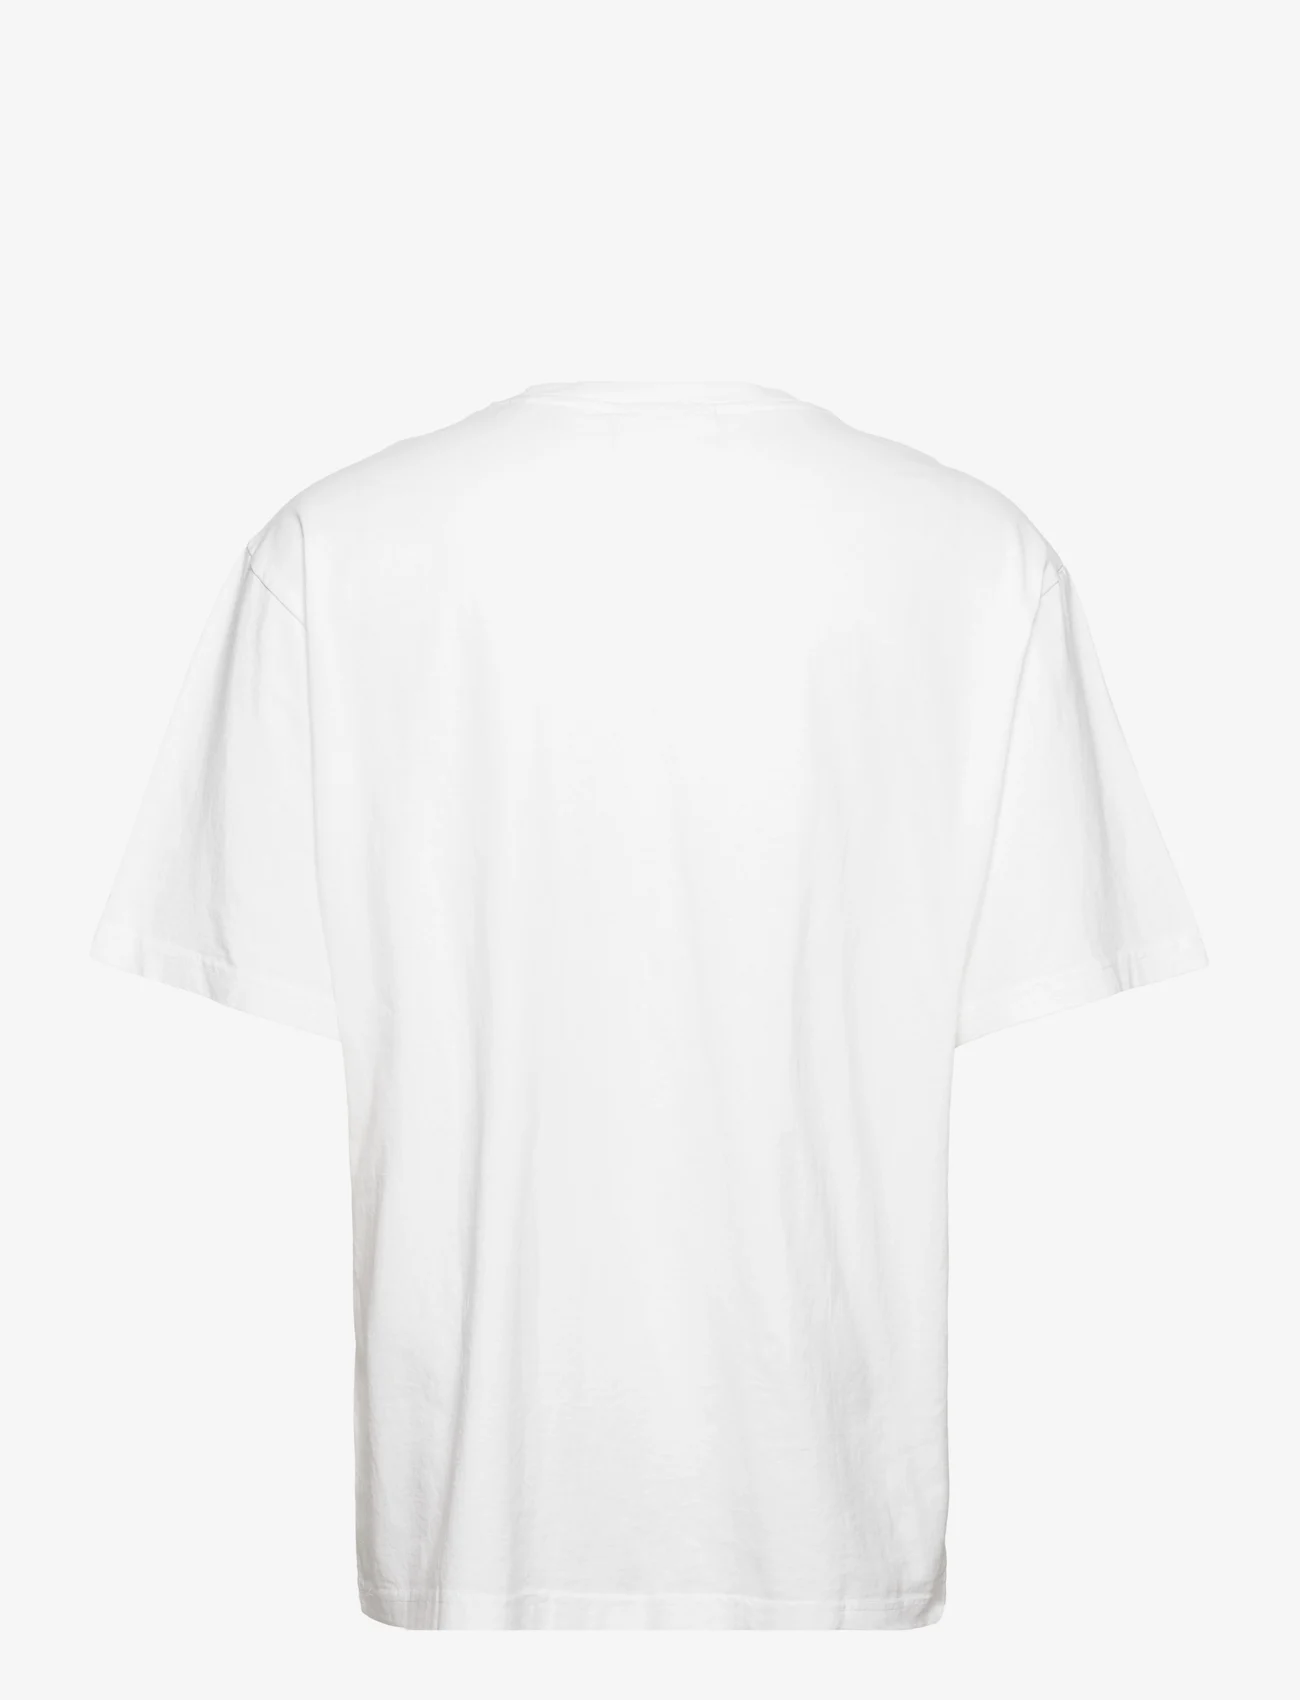 HAN Kjøbenhavn - Boxy Tee Short Sleeve - basis-t-skjorter - white - 1